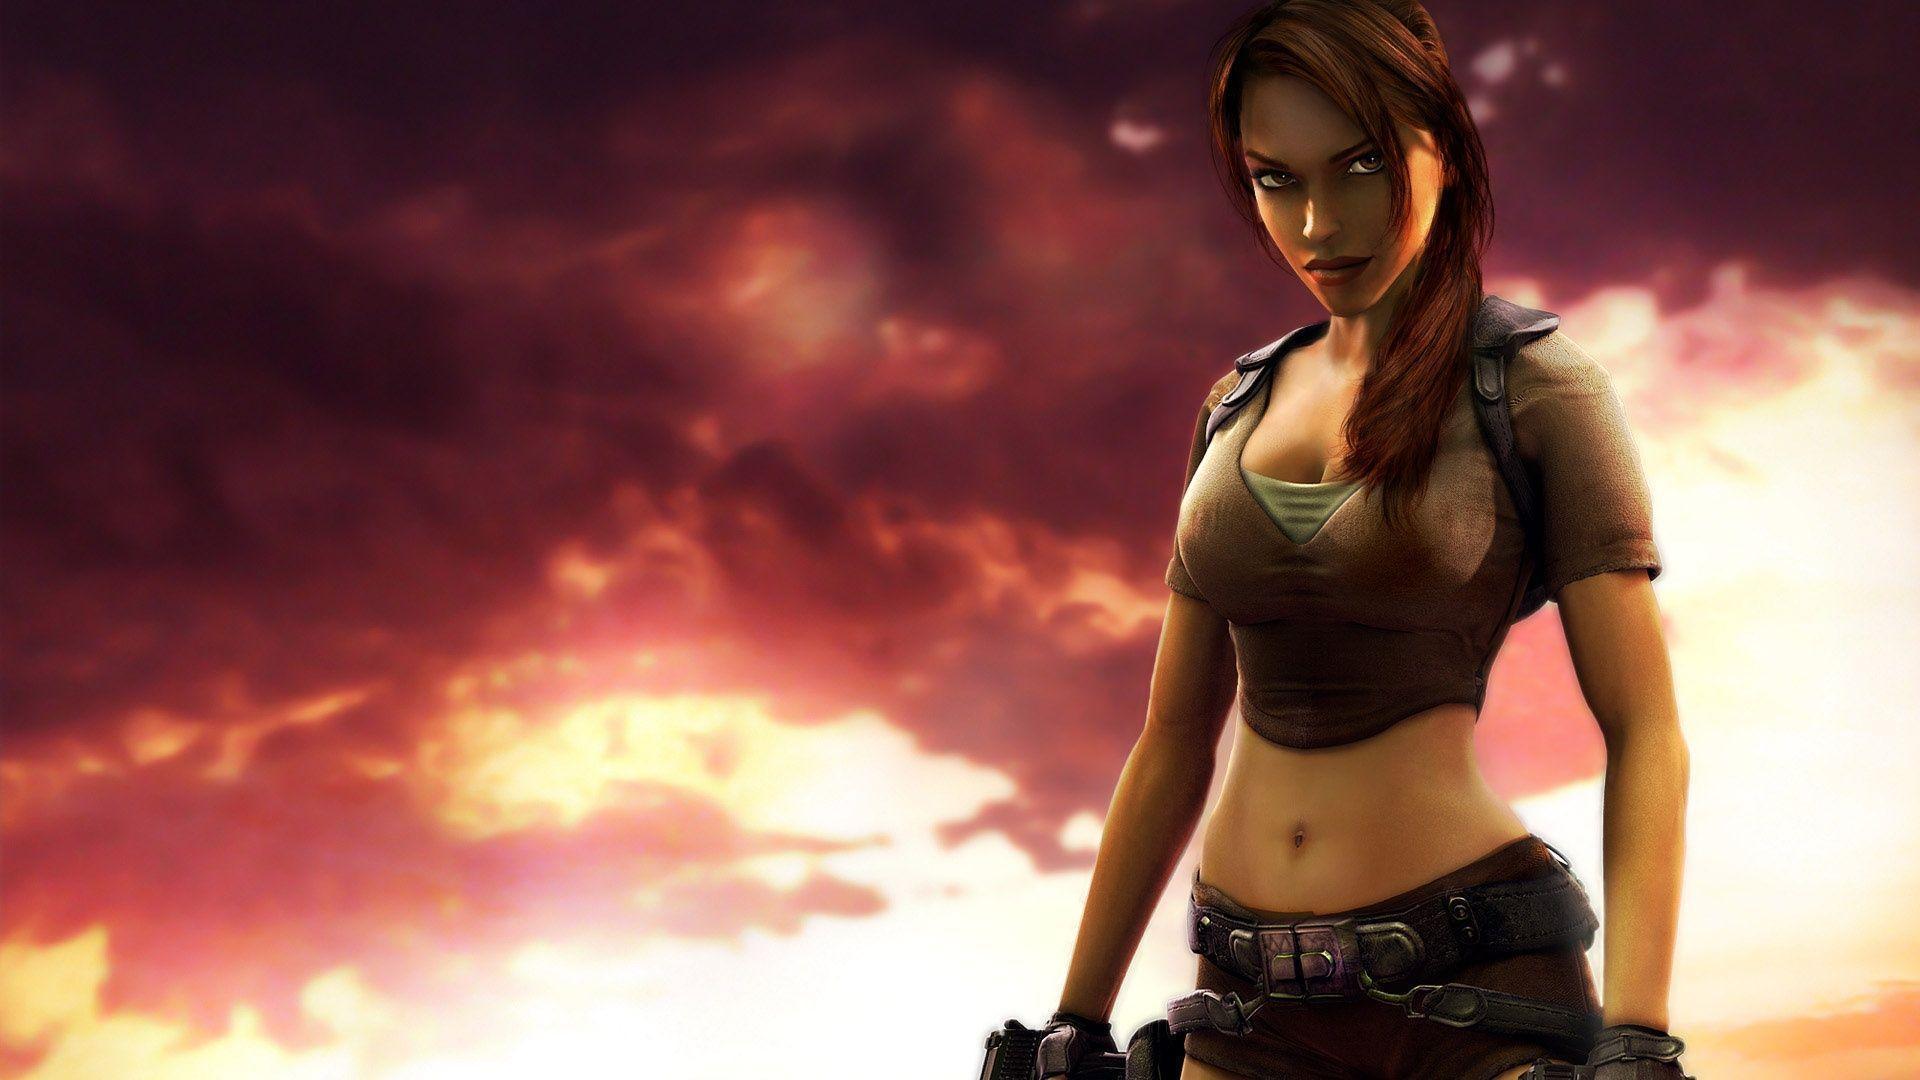 Beautiful Girl Lara Croft In Tomb Raider Game Wallpapers Desktop